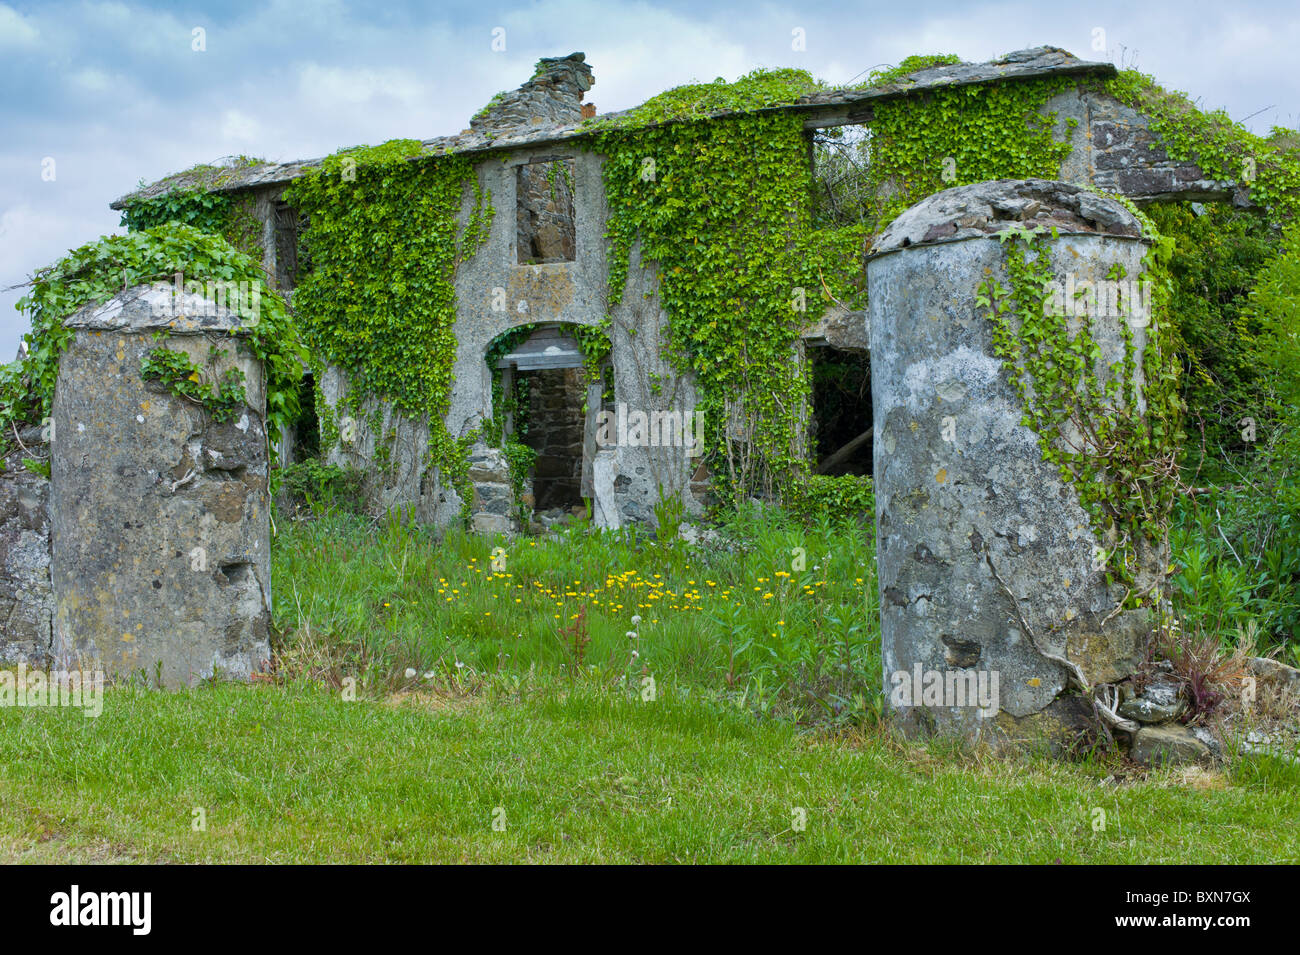 Maison en ruine abandonné dans le besoin de rénovation, couverte de lierre et autres plantes grimpantes en Co Wexford, Irlande Banque D'Images